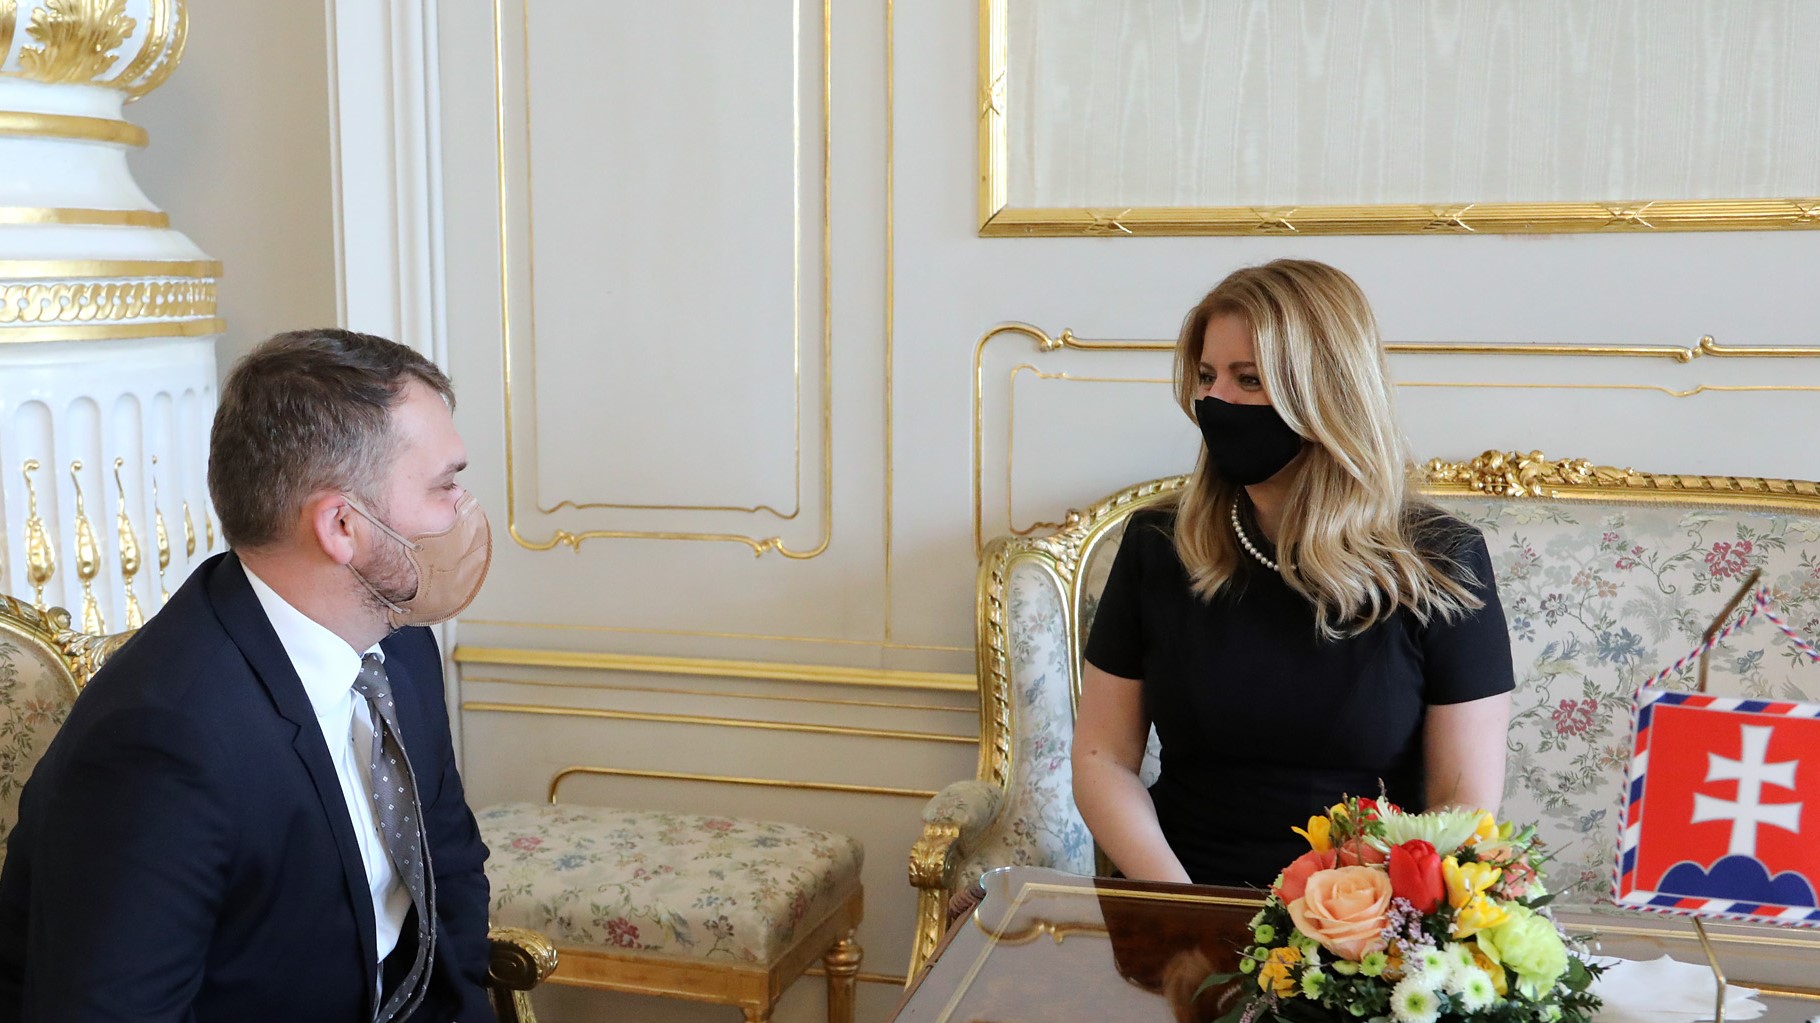 Predseda Slovenskej advokátskej komory Viliam Karas sa stretol s prezidentkou Slovenskej republiky Zuzanou Čaputovou